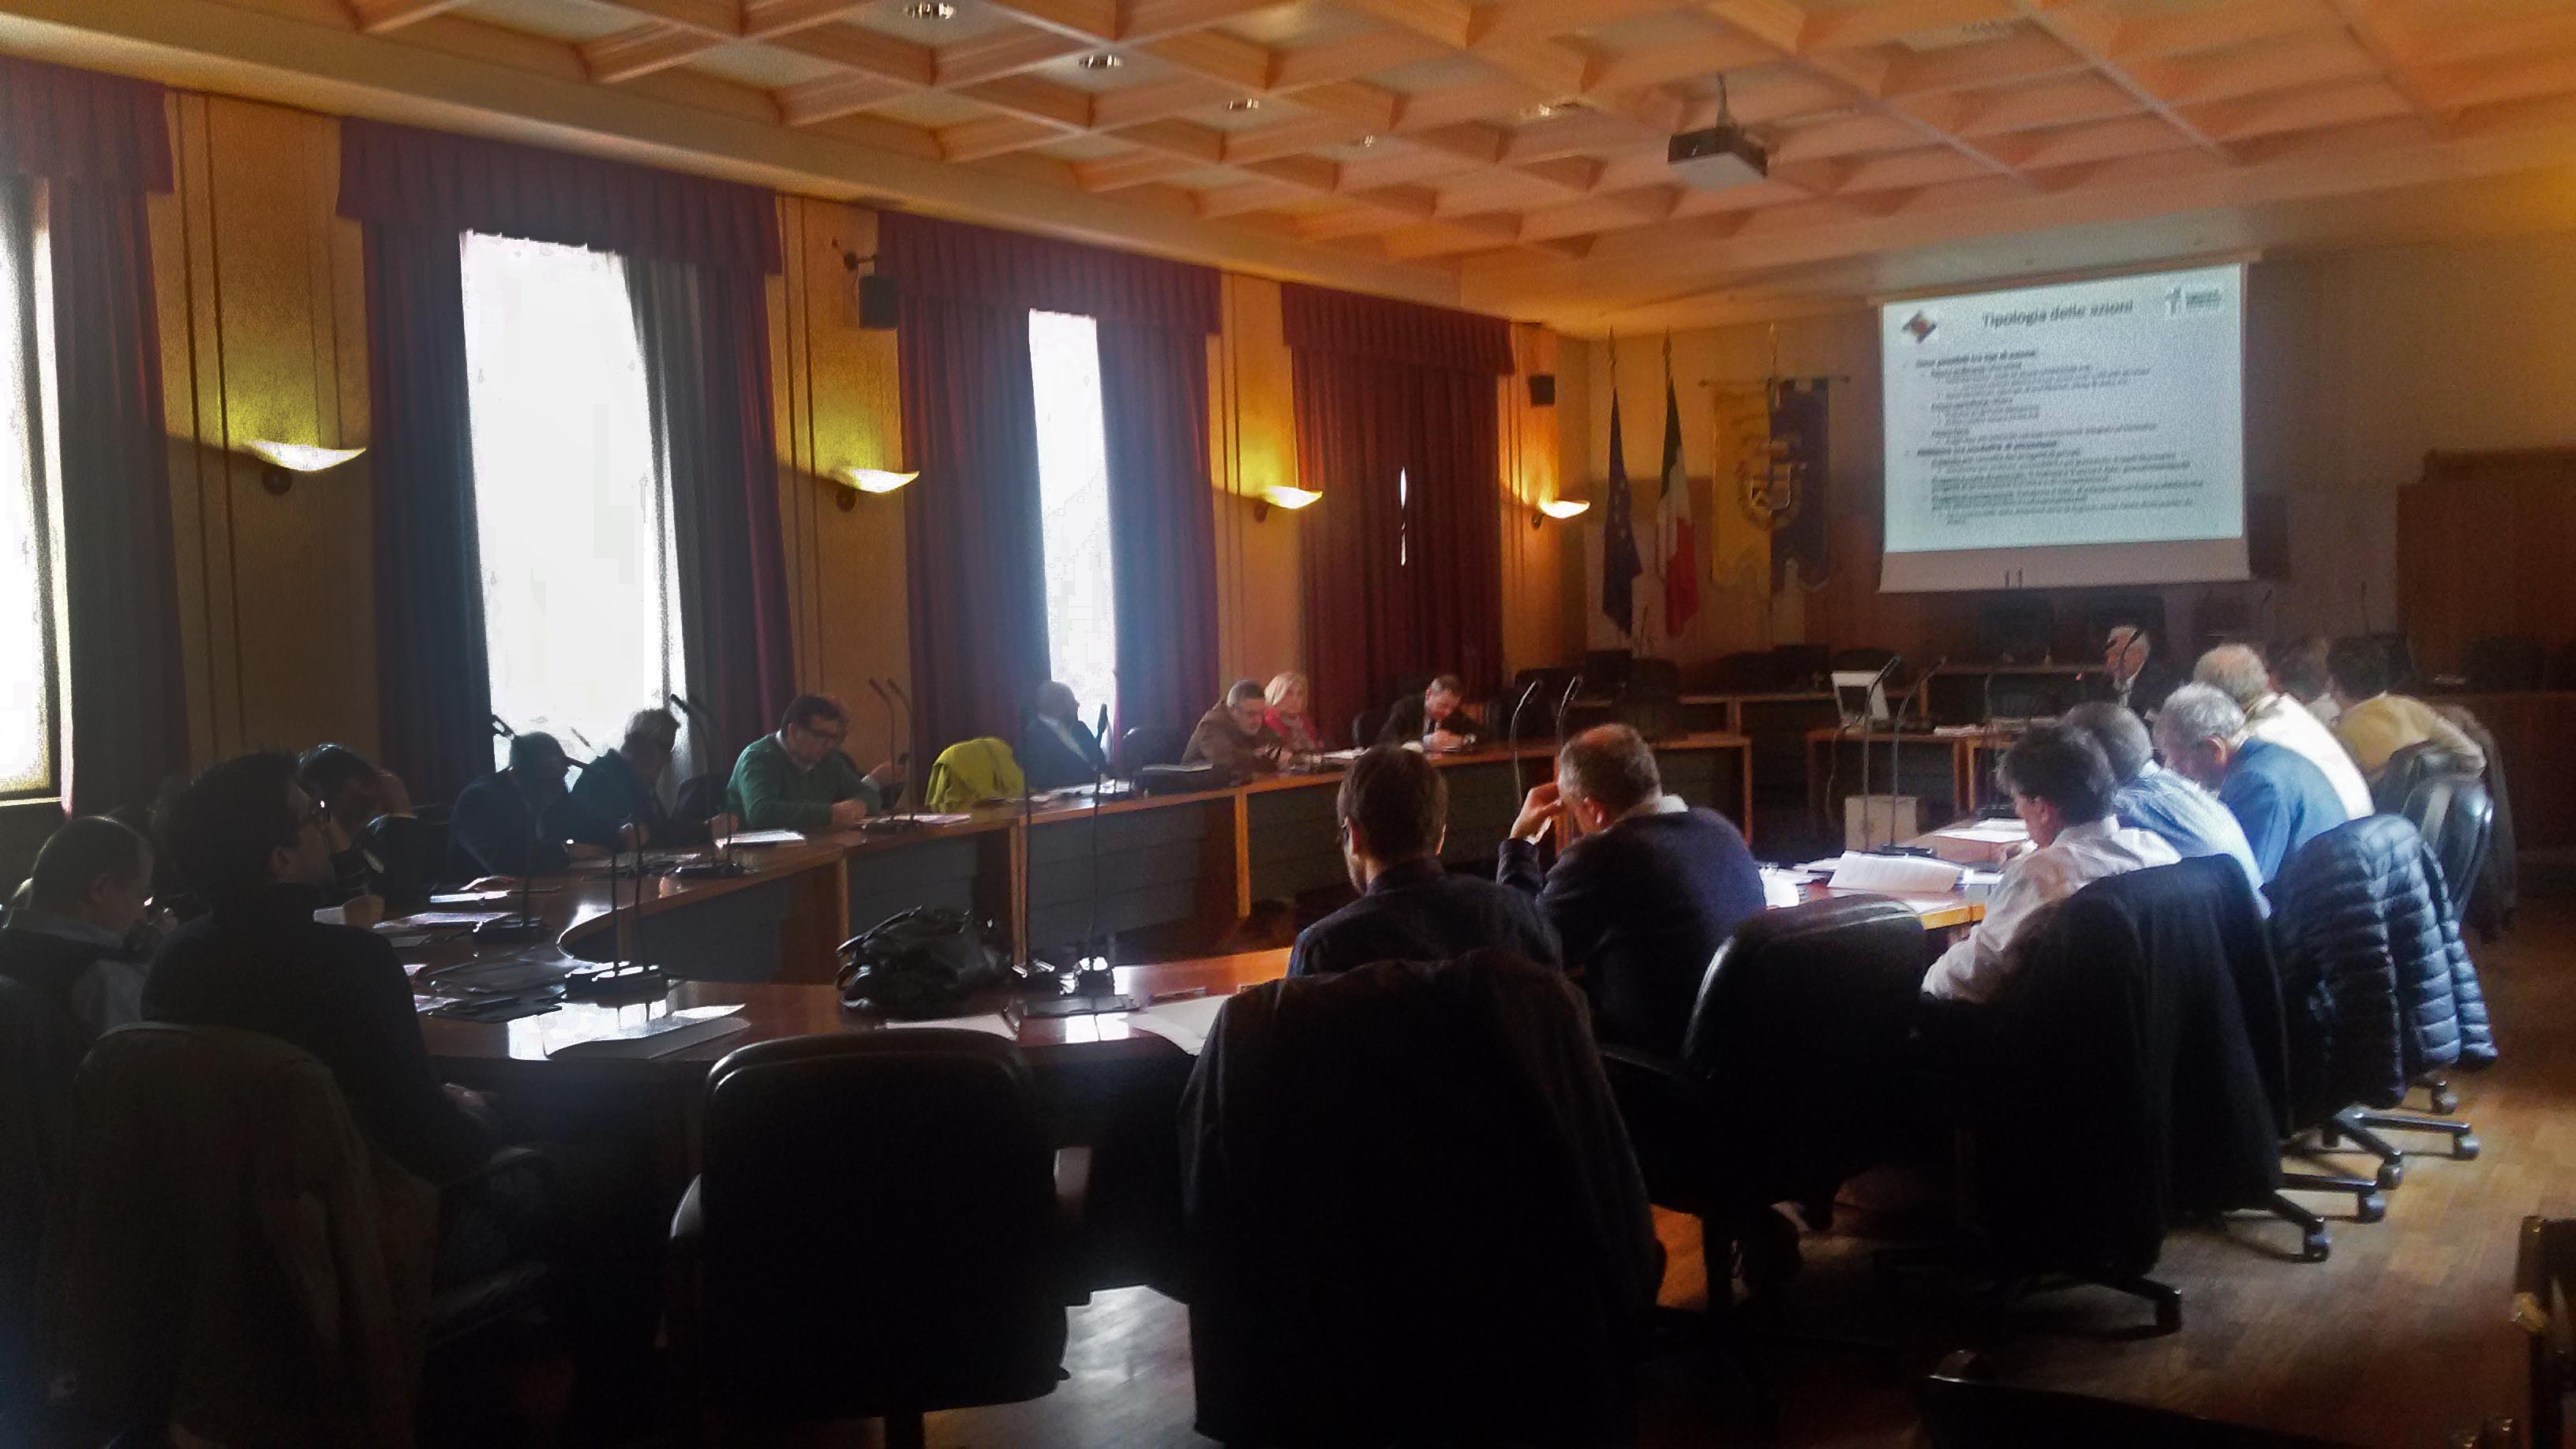 Approvato il Piano di Azione Locale  2014/2020 per l’Appennino Modenese e Reggiano